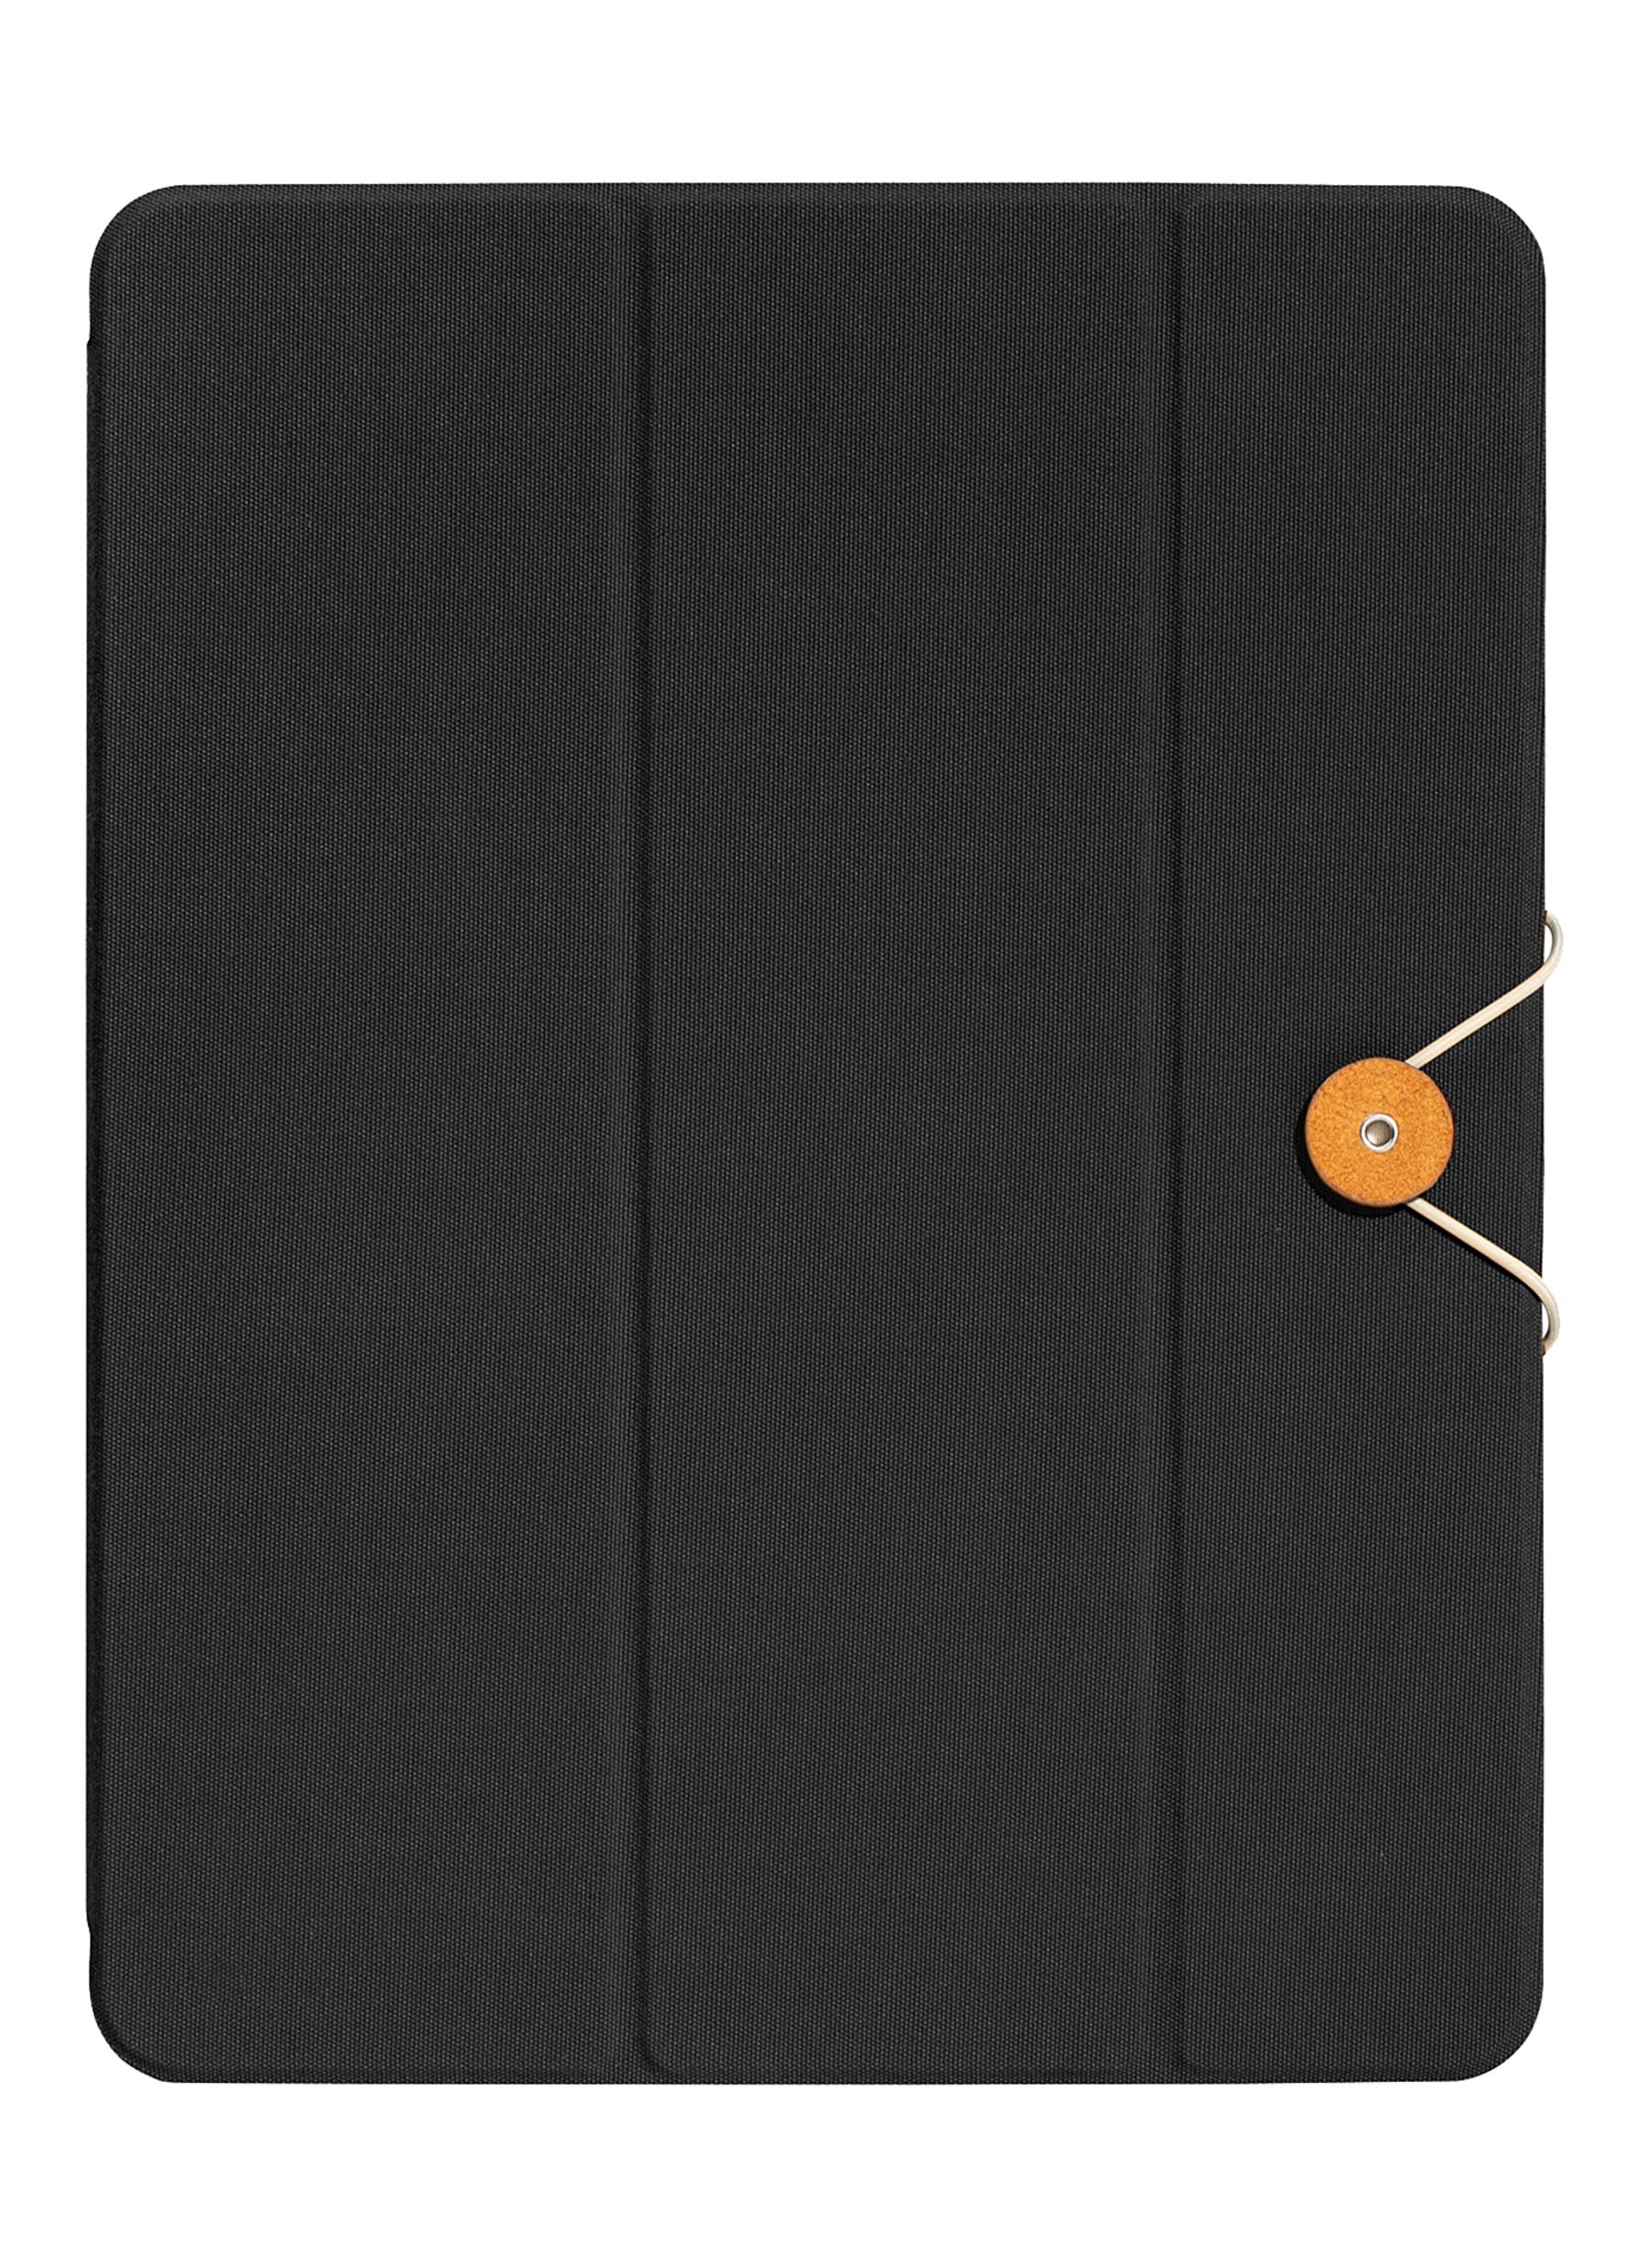 Folio iPad Front Cover - Black